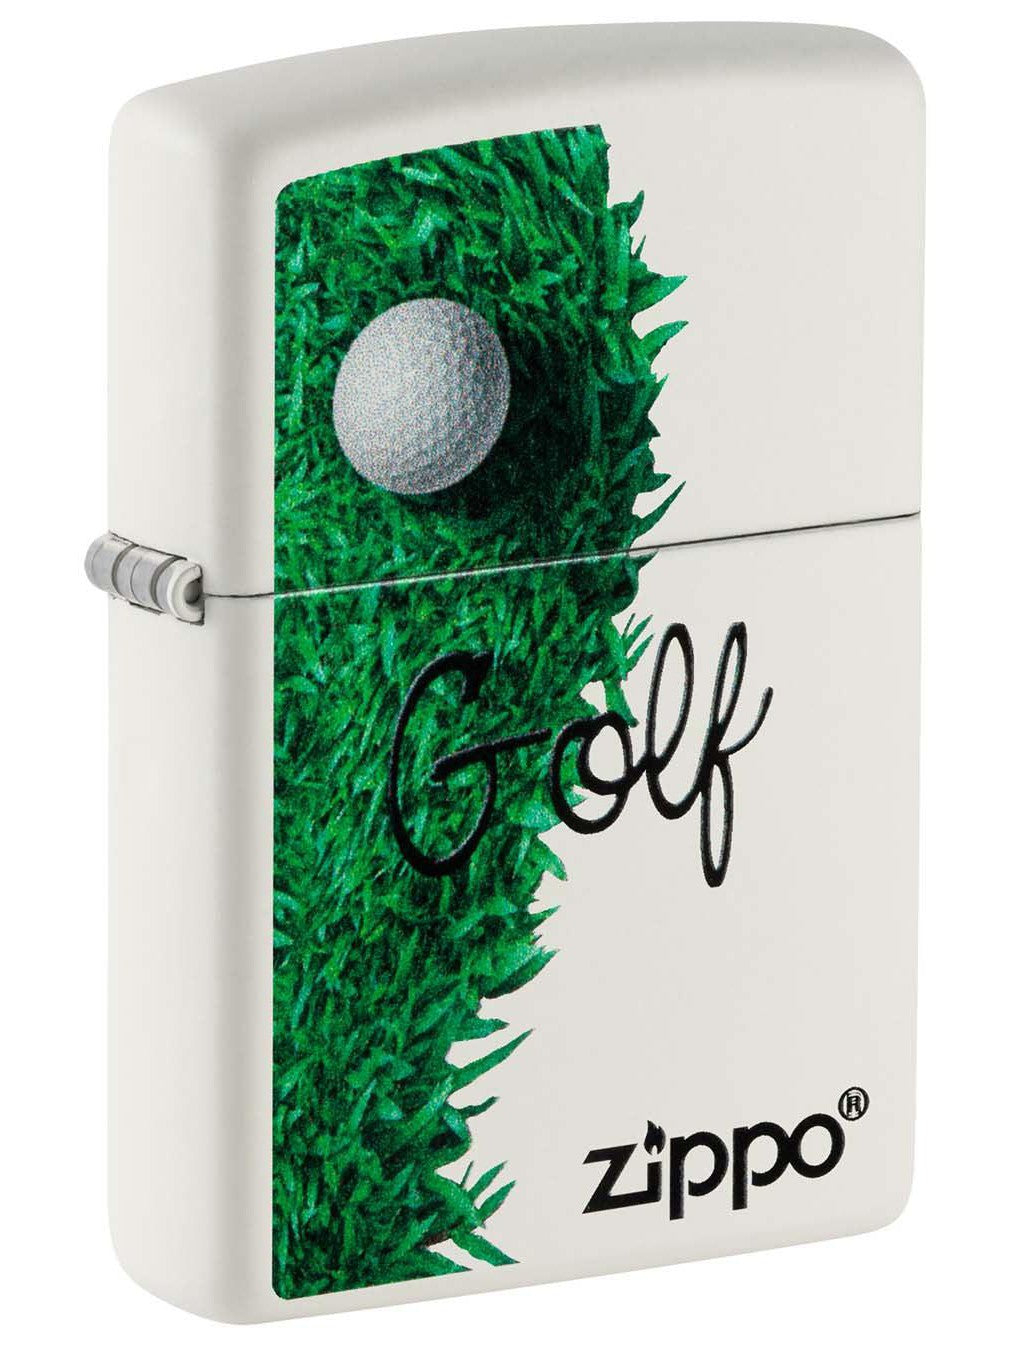 Zippo Lighter: Golf Ball and Grass - White Matte 49900